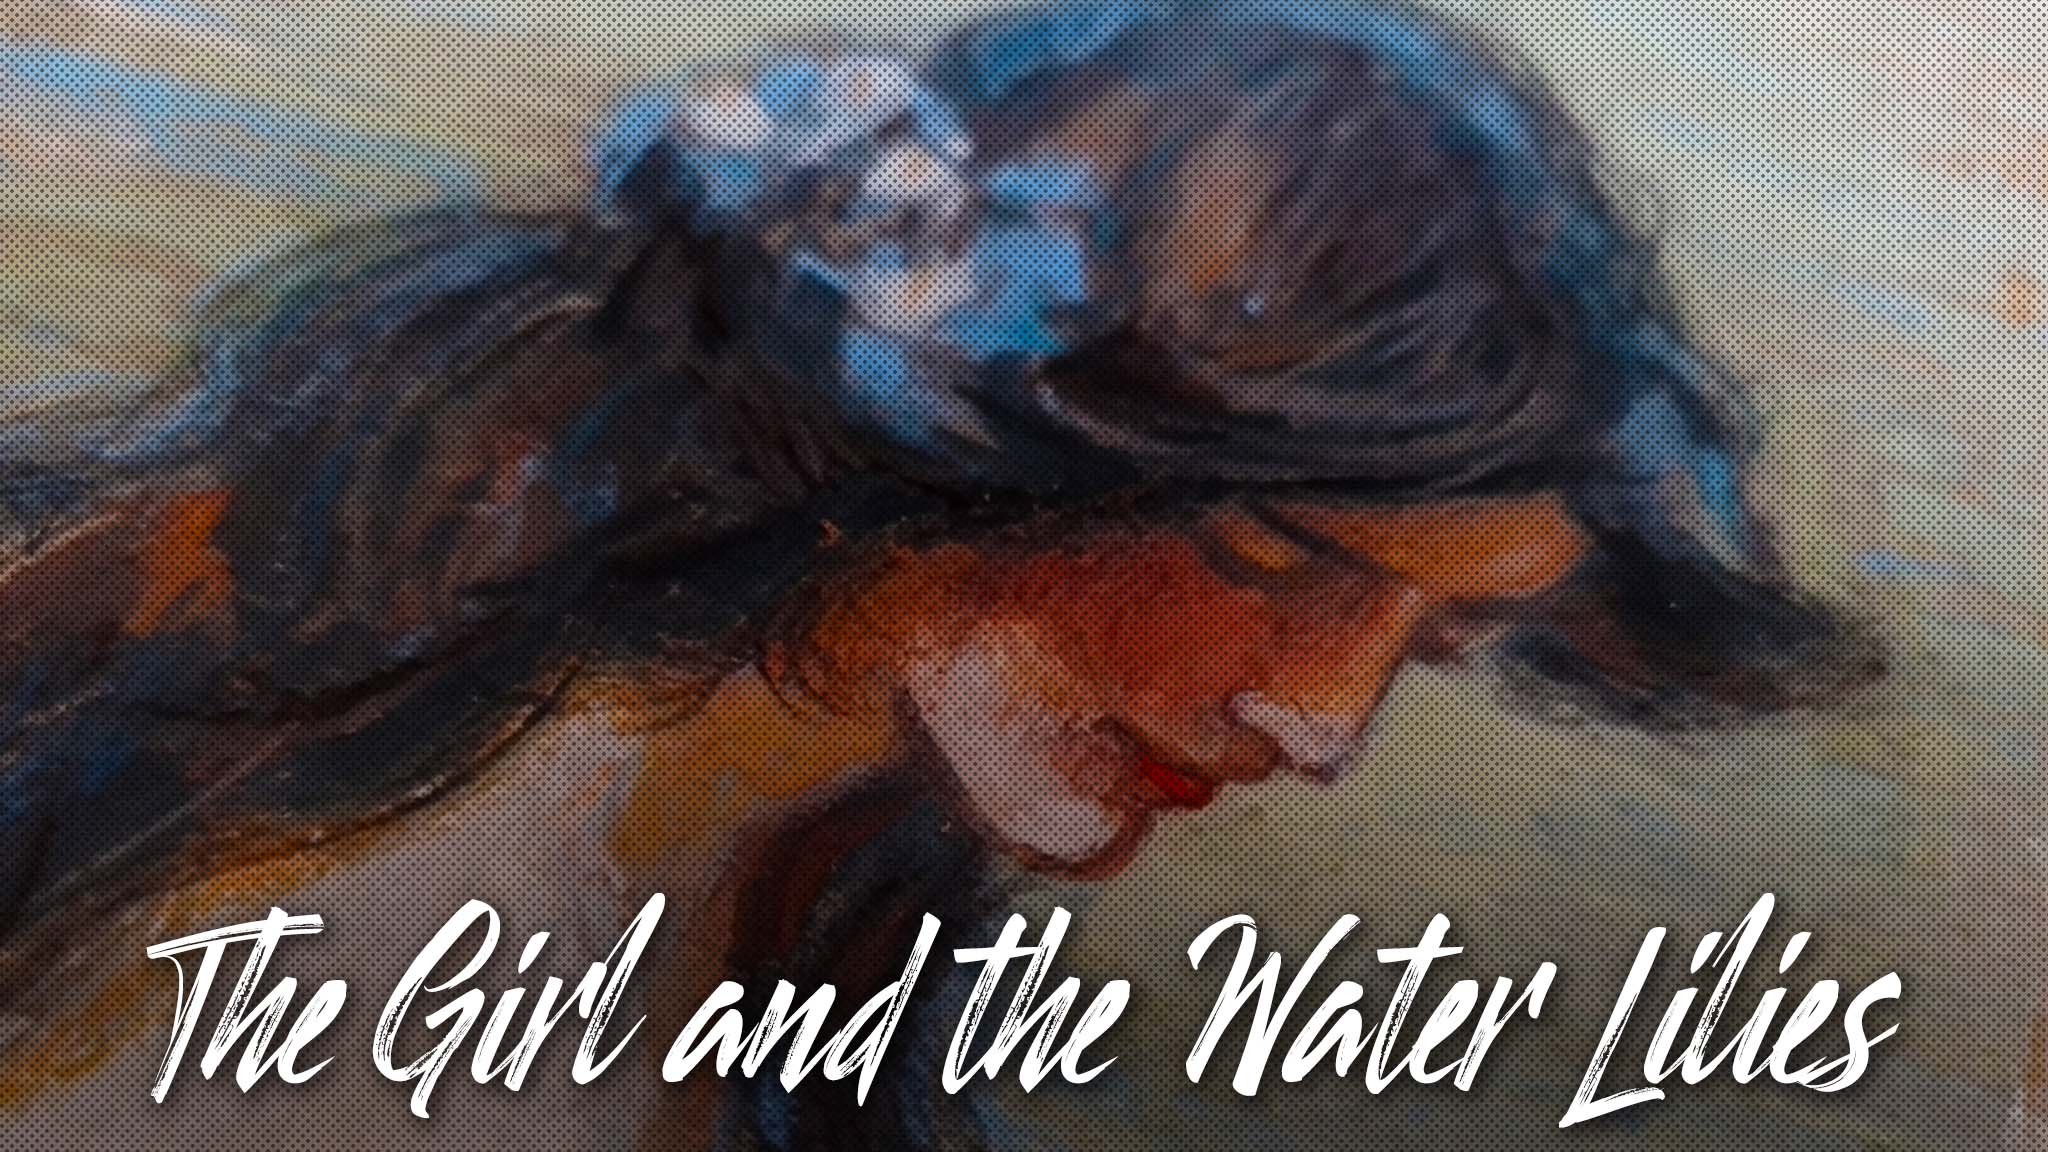 ИМПРЕССИОНИЗМ рисую сухой пастелью и гуашью ДЕВУШКА и КУВШИНКИ | The girl and the water lilies